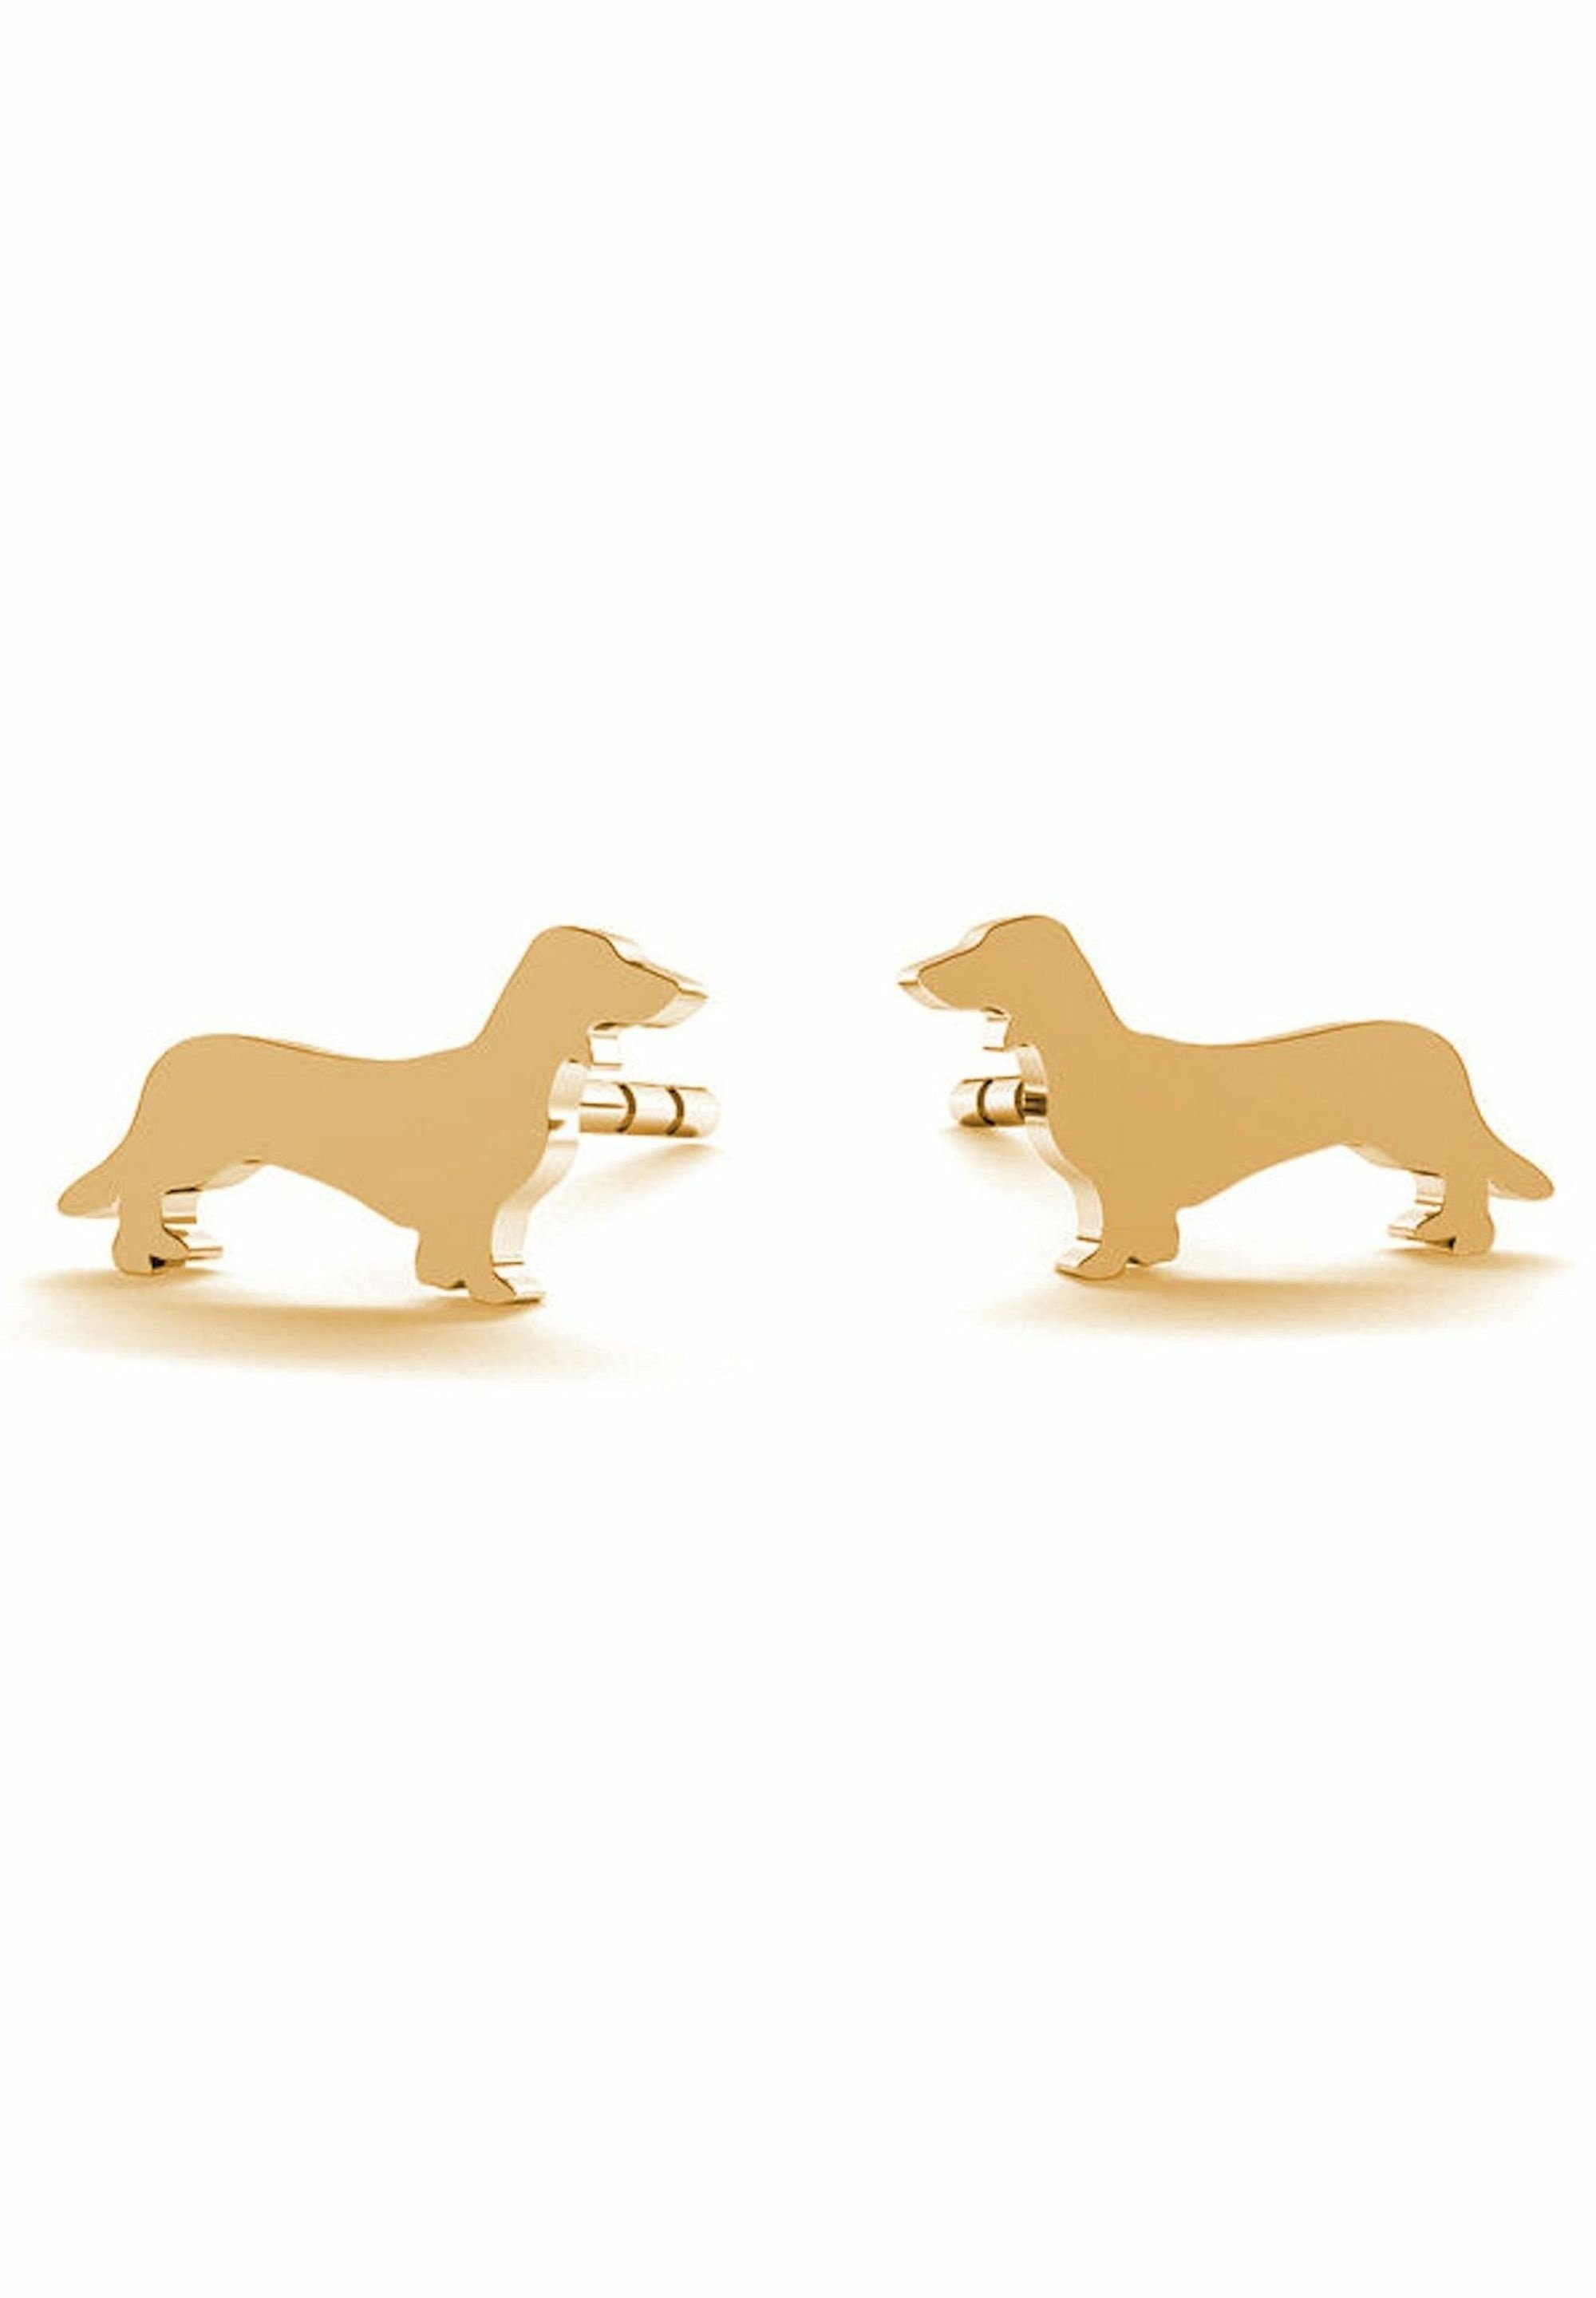 gold Hund, DACHSHUND, Gemshine Haustier Ohrhänger coloured DACKEL Paar